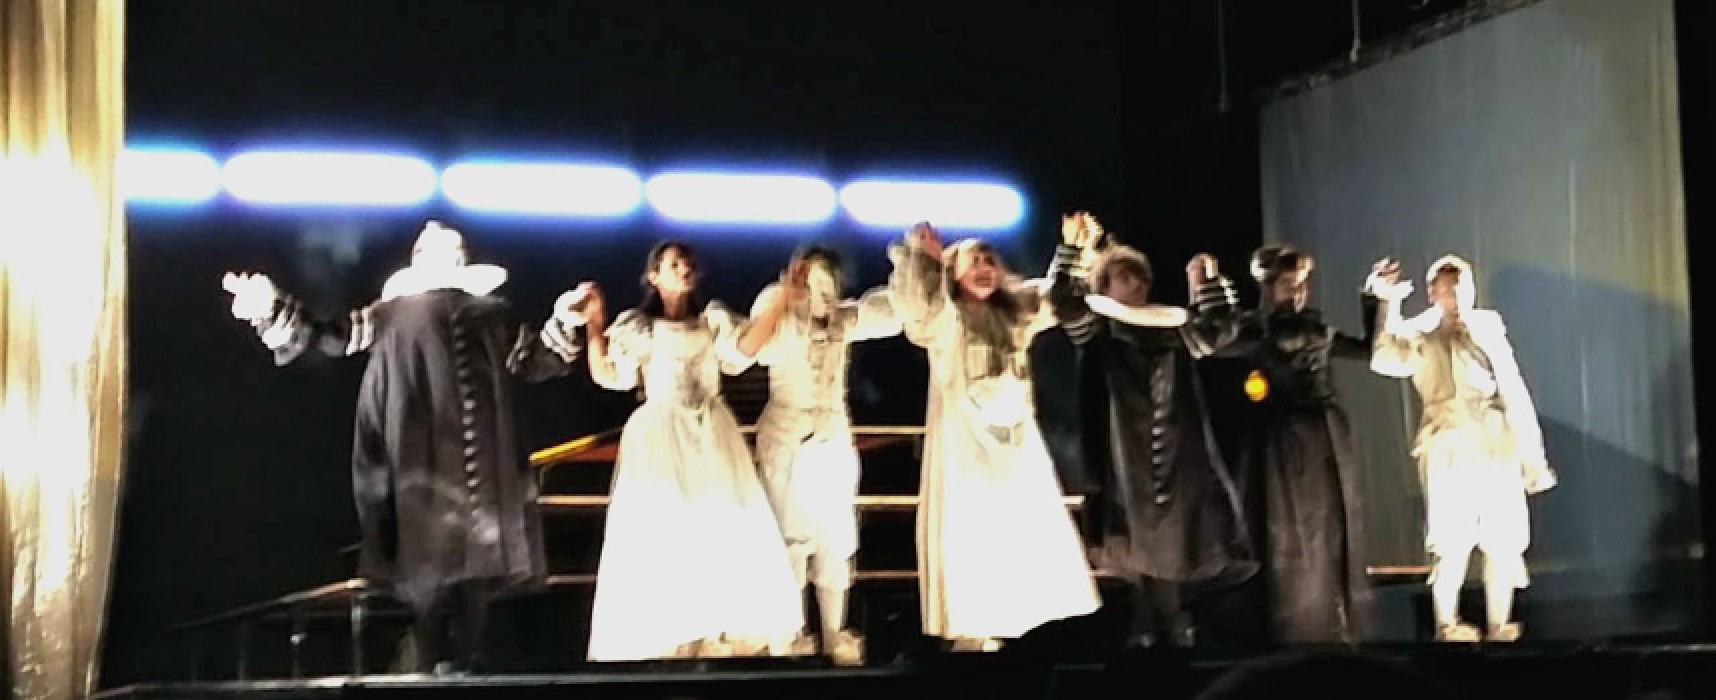 Teatro Garibaldi, “Il malato immaginario” di Molière tra inganni e verità celate